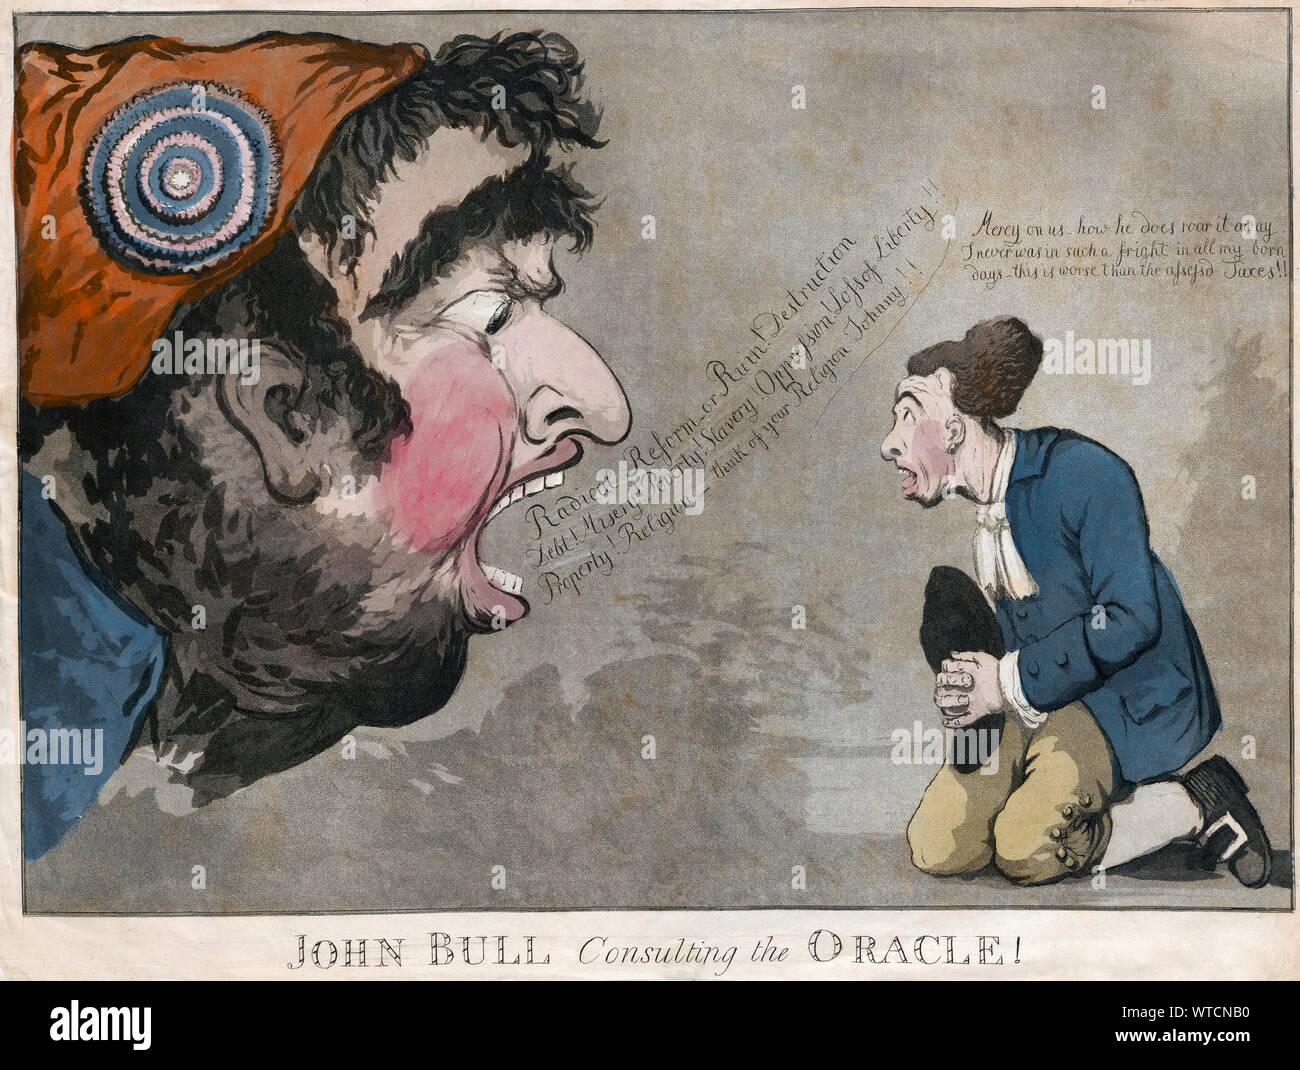 John Bull s'agenouille sur la gauche, à la tête d'un monstrueux à terrifiés, qui rugit à lui. La tête est celle de Charles James Fox, caricaturé, avec exag Banque D'Images